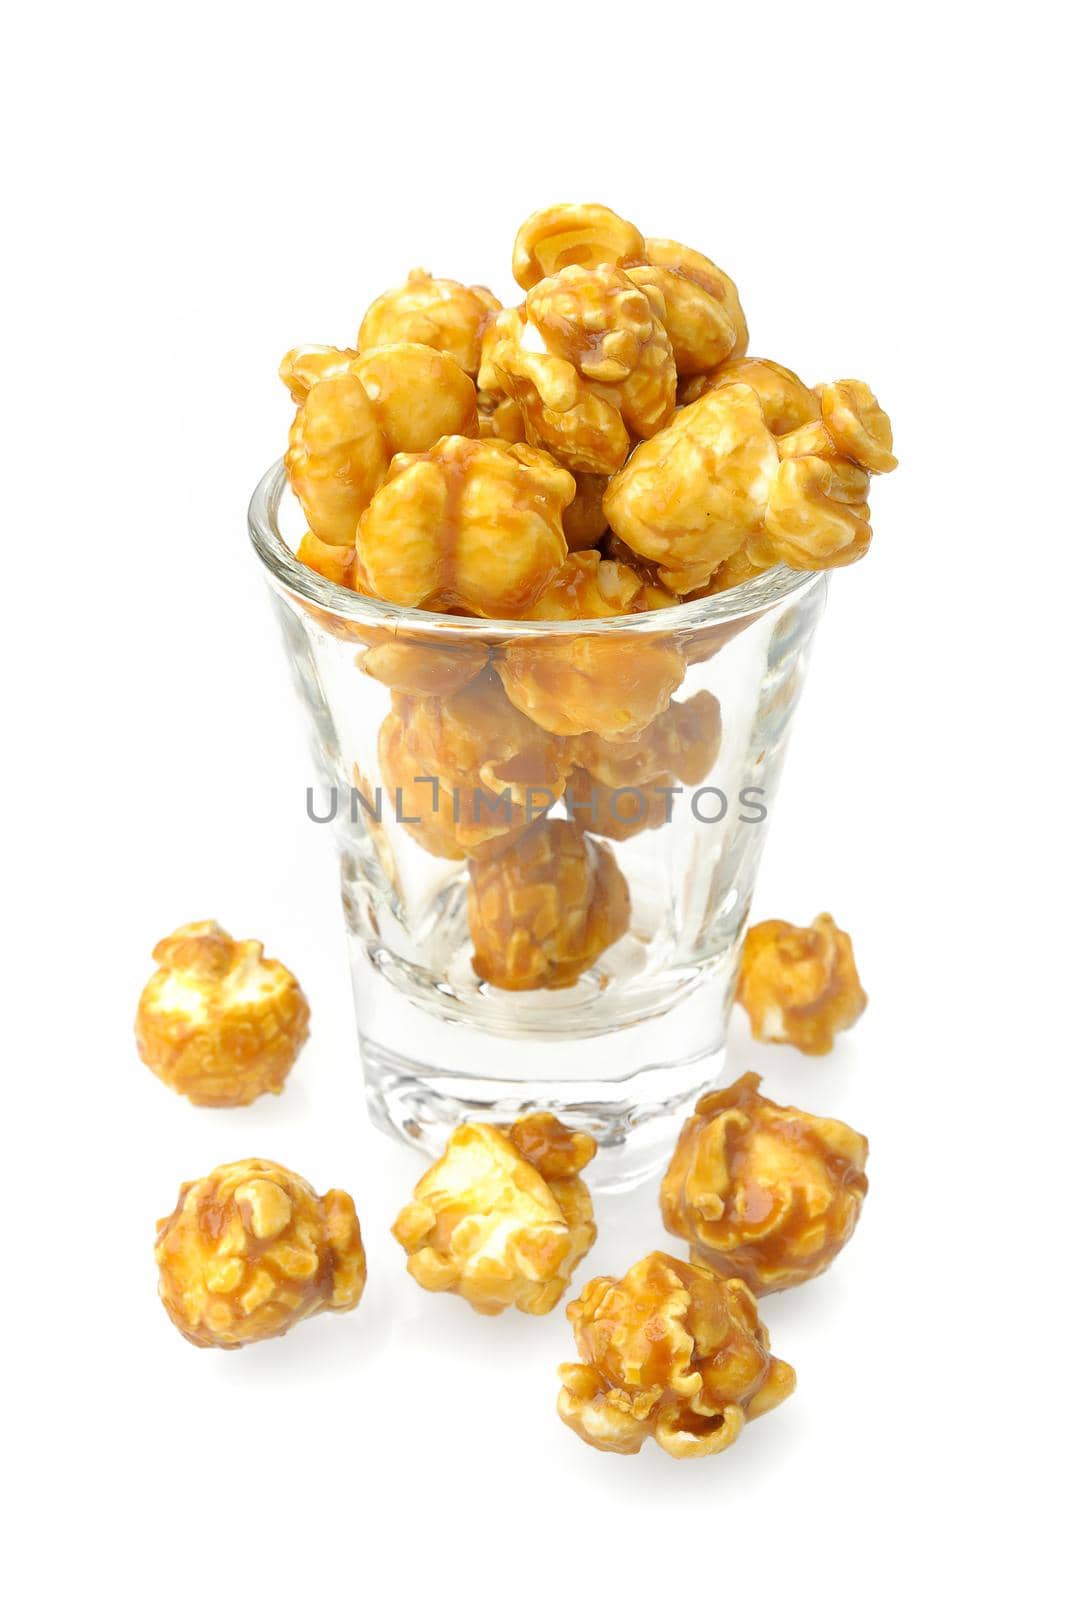 caramel popcorn isolated on white background